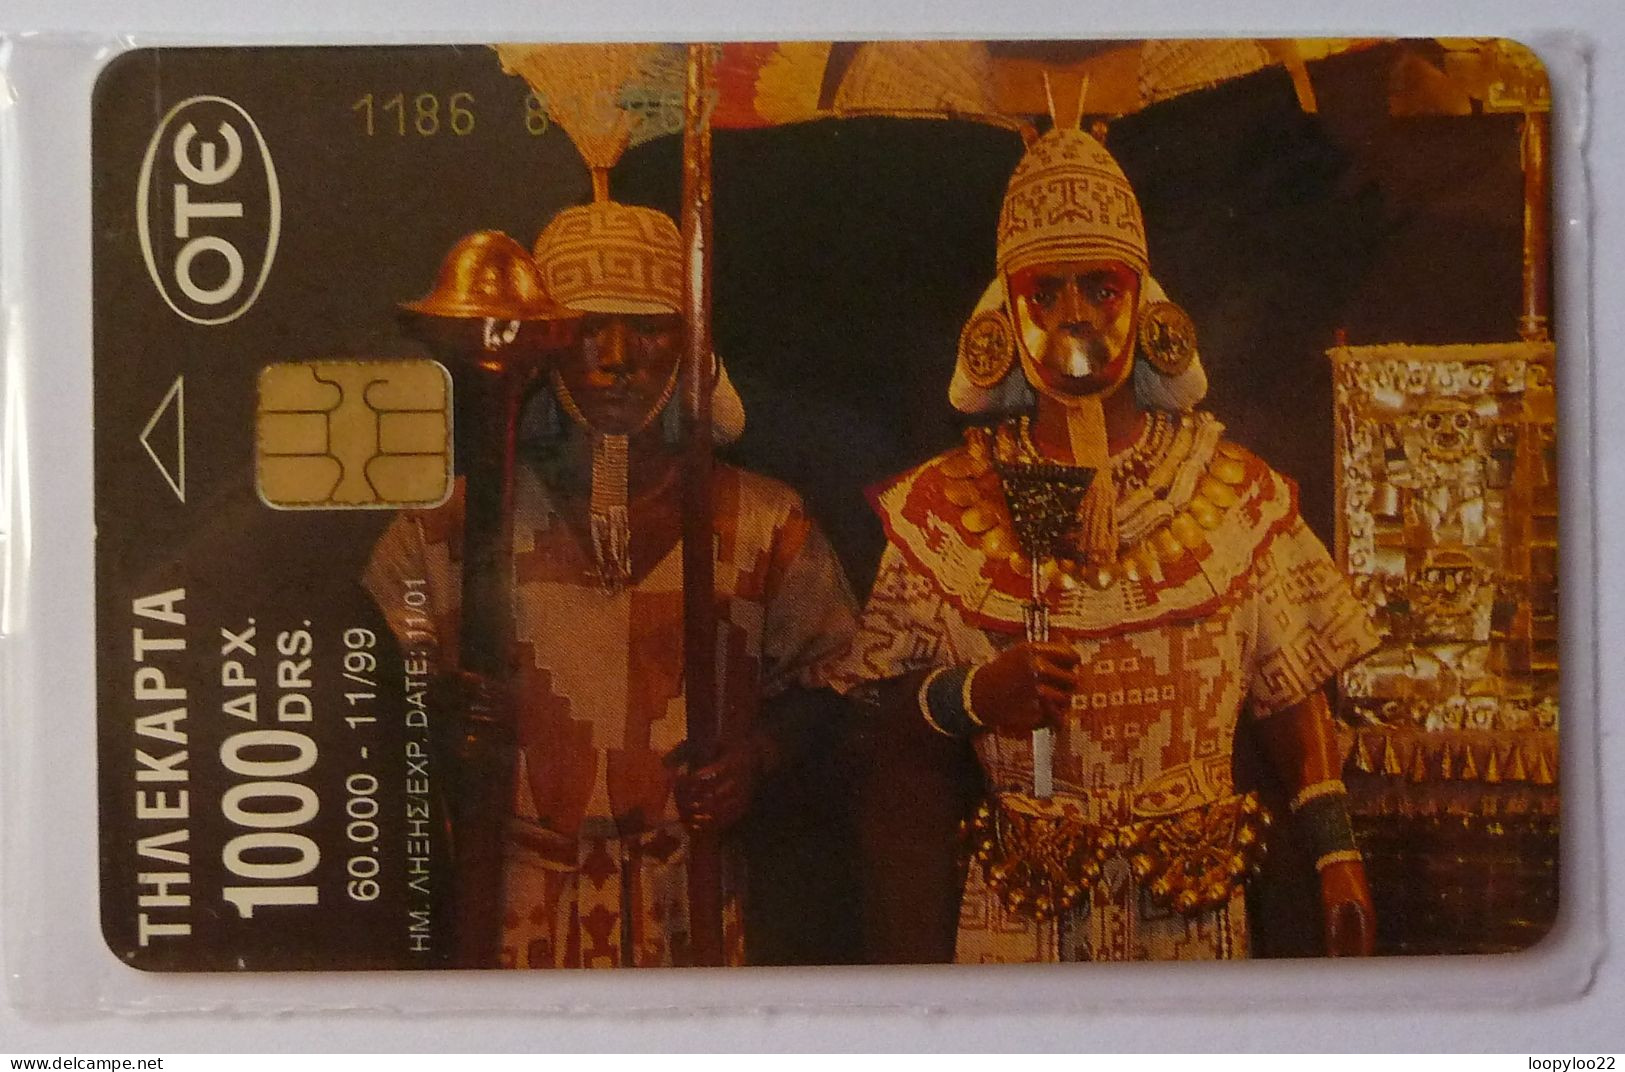 GREECE - Chip - OTE - Millenium - Incas - 11/99 - 1000 Units - Mint Blister - Greece